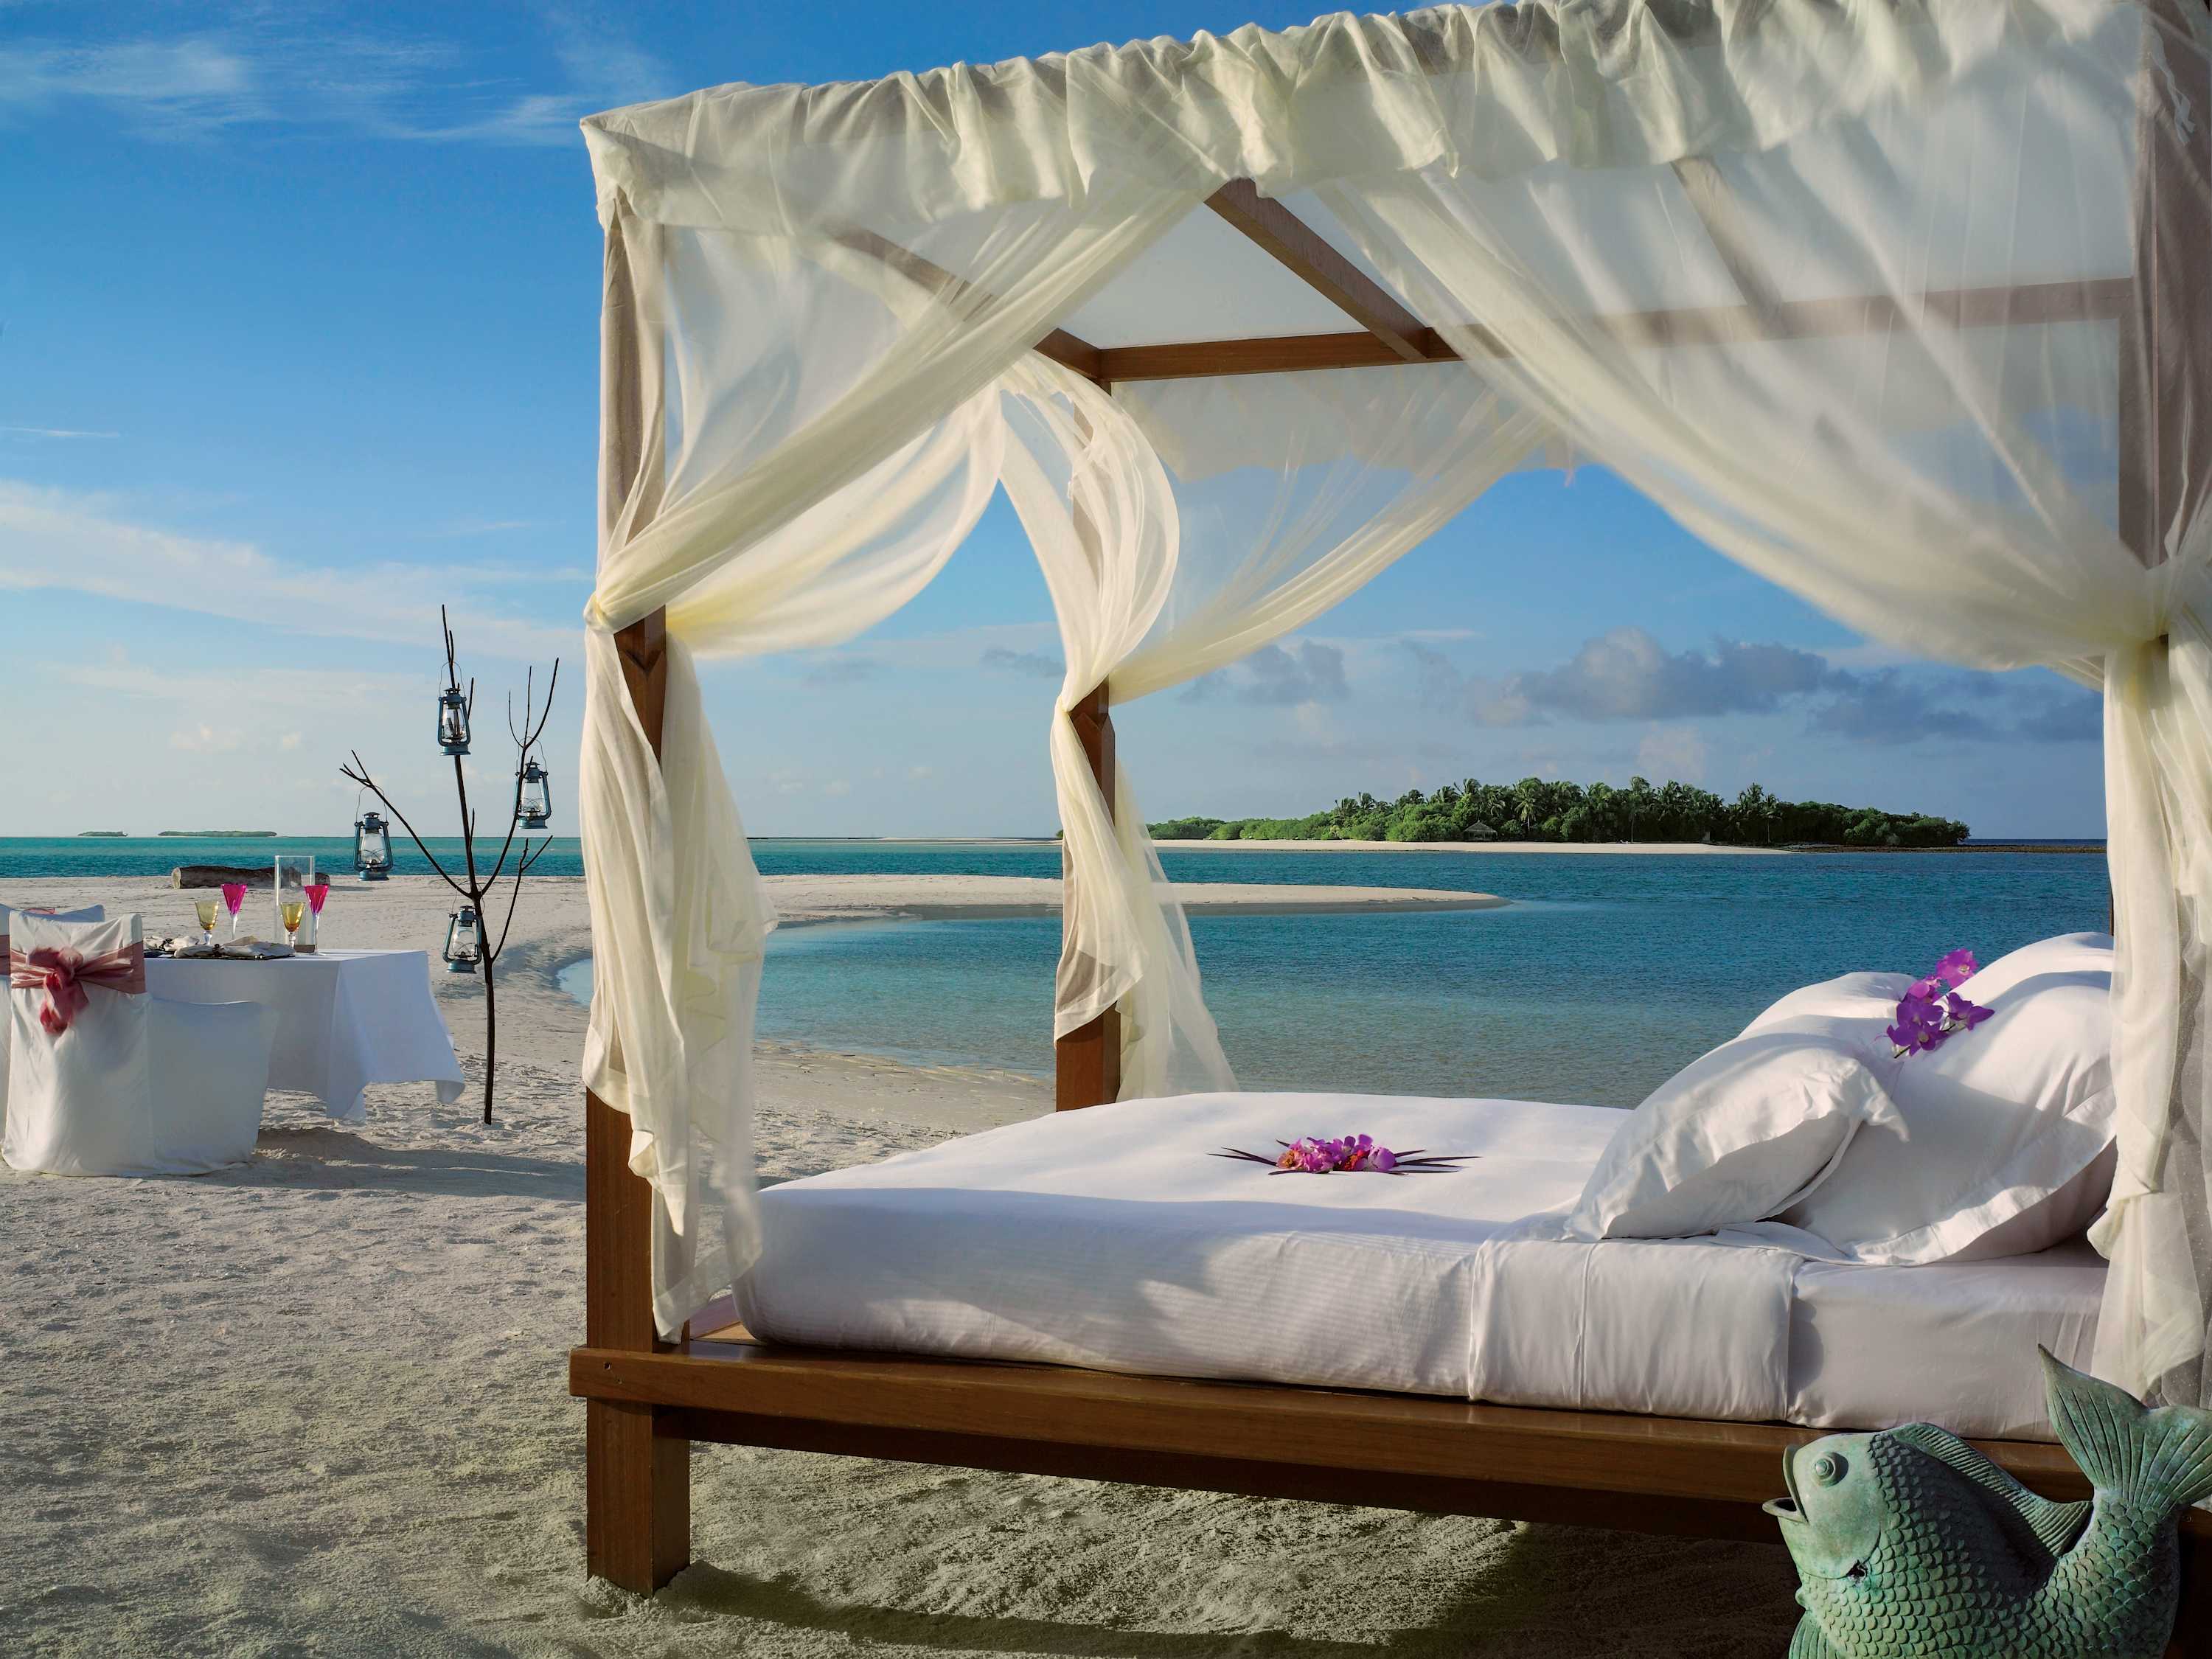 Беседка у моря. Мальдивы Резорт. Шикарный вид на море. Шикарные места отдыха. Красивый вид на пляж.